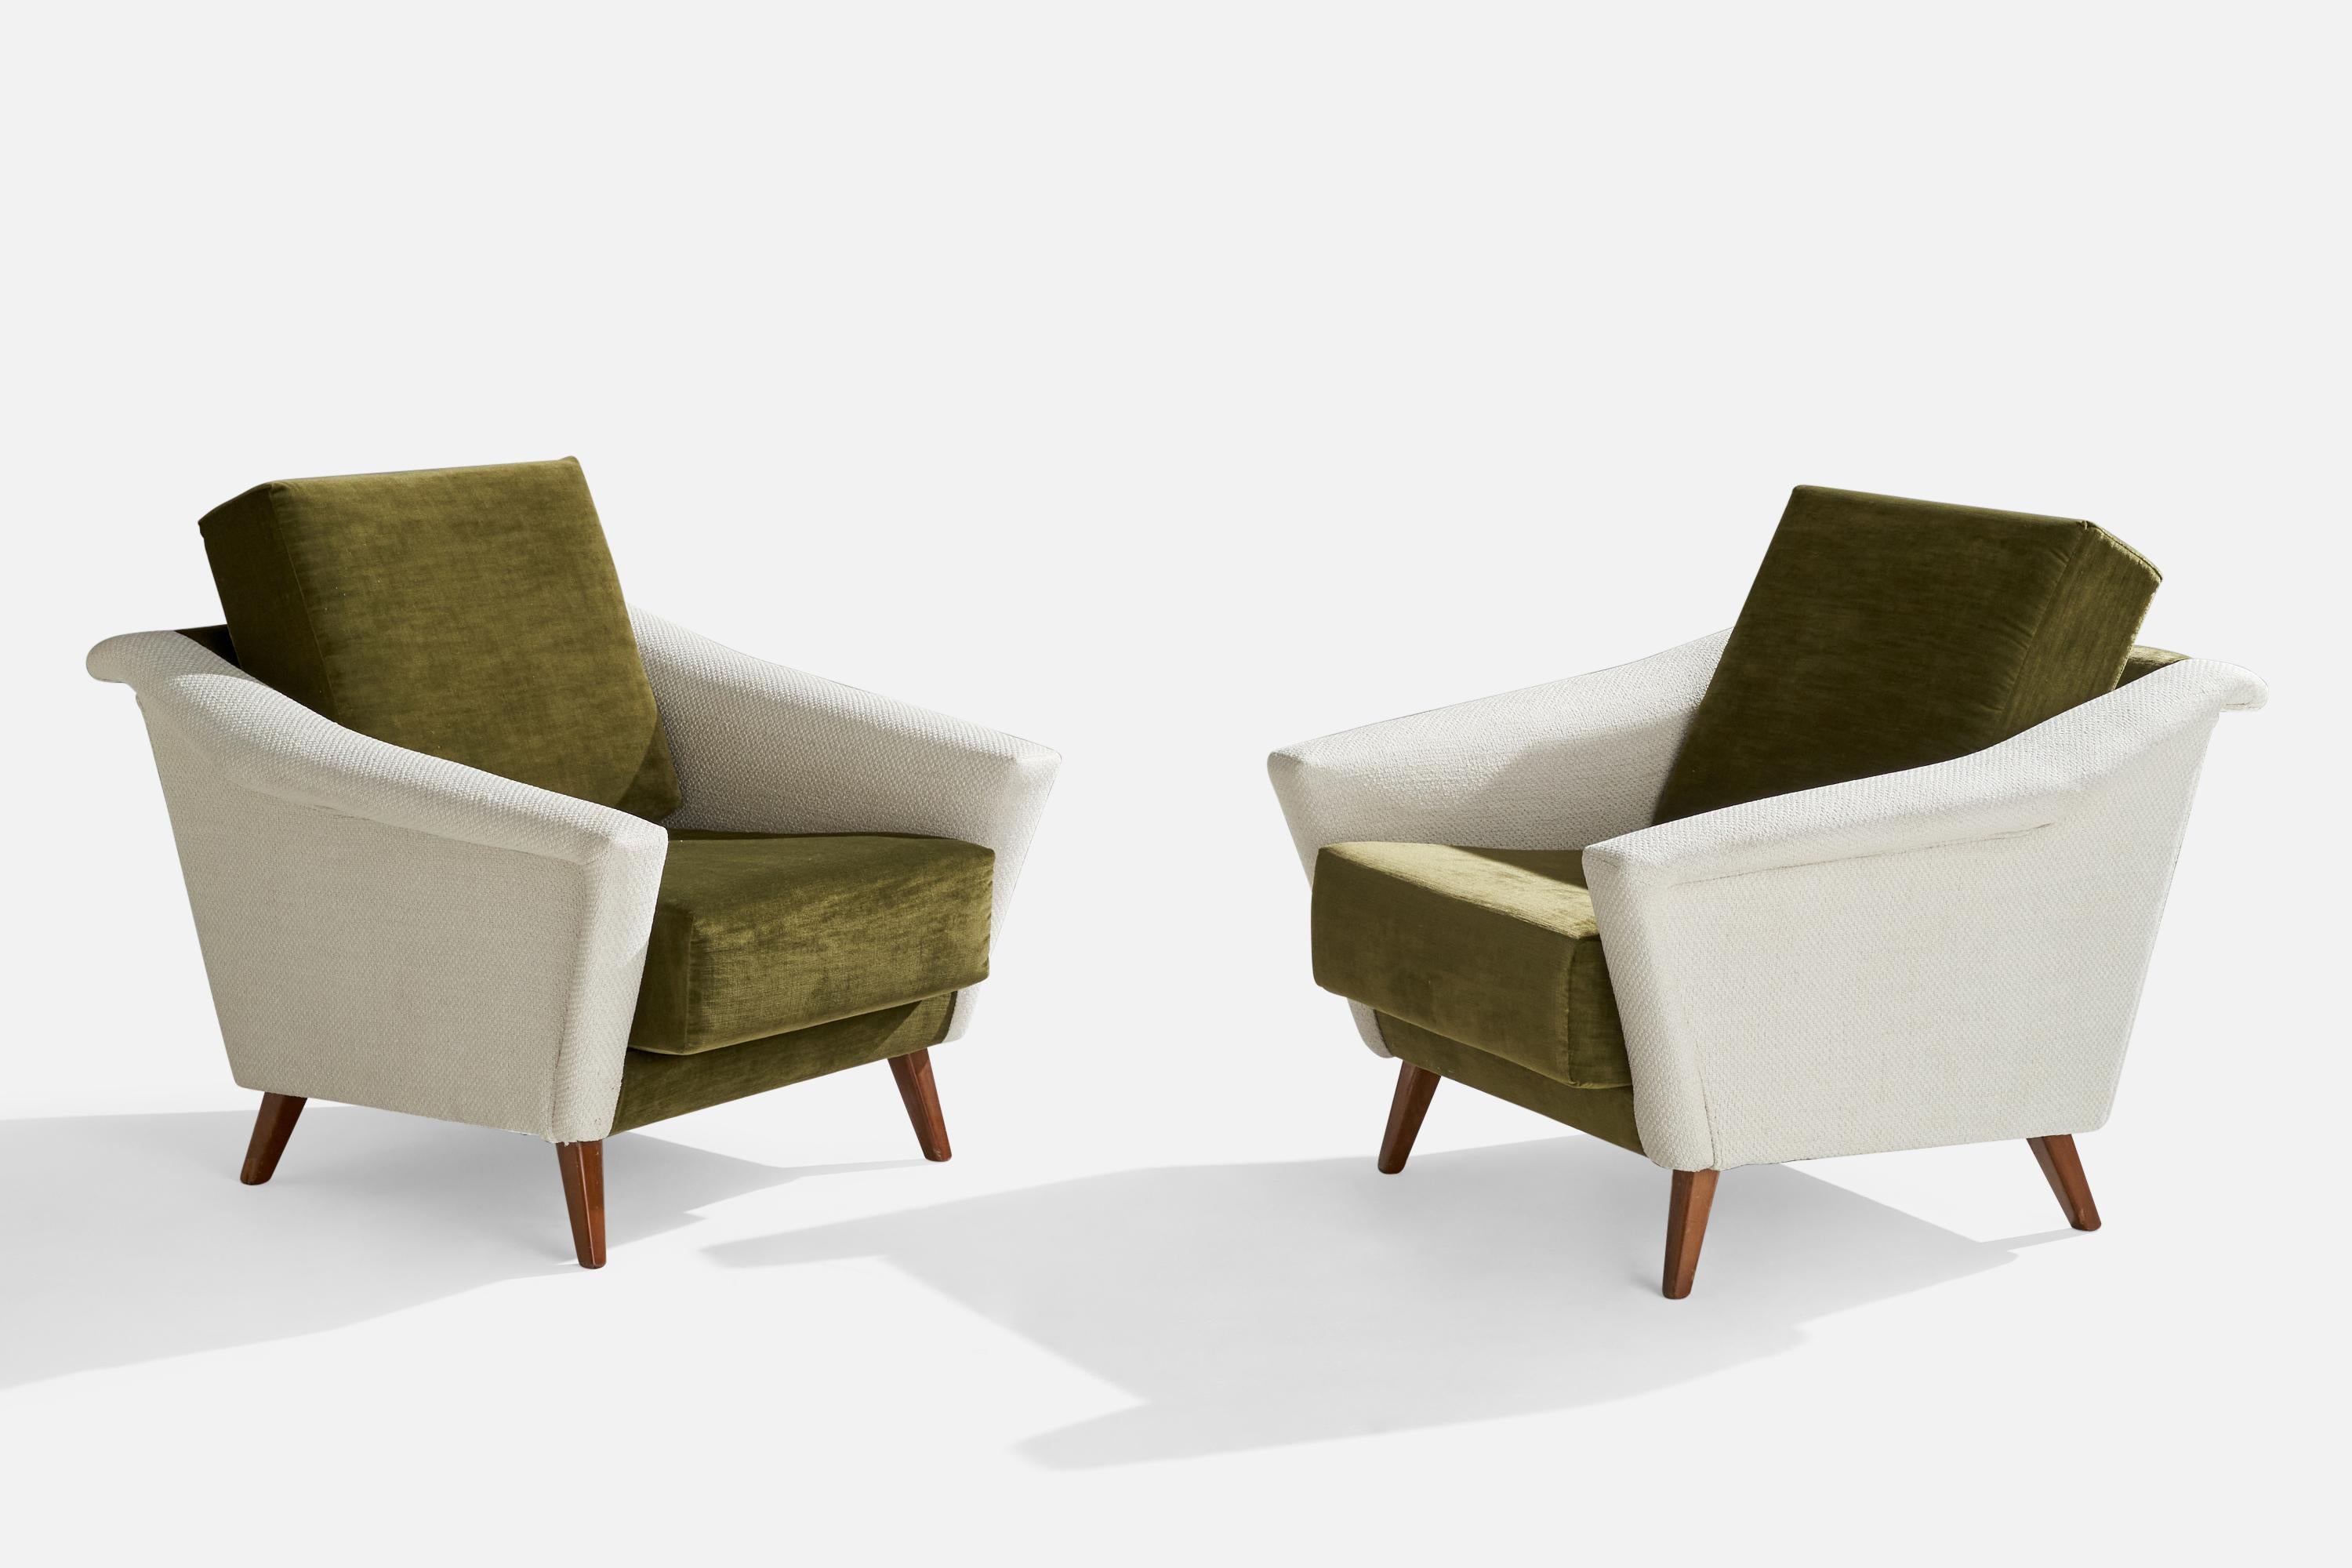 Ein Paar Sessel aus weißem Stoff, grünem Samt und Nussbaumholz, entworfen und hergestellt in Italien, 1950er Jahre.

Sitzhöhe 16